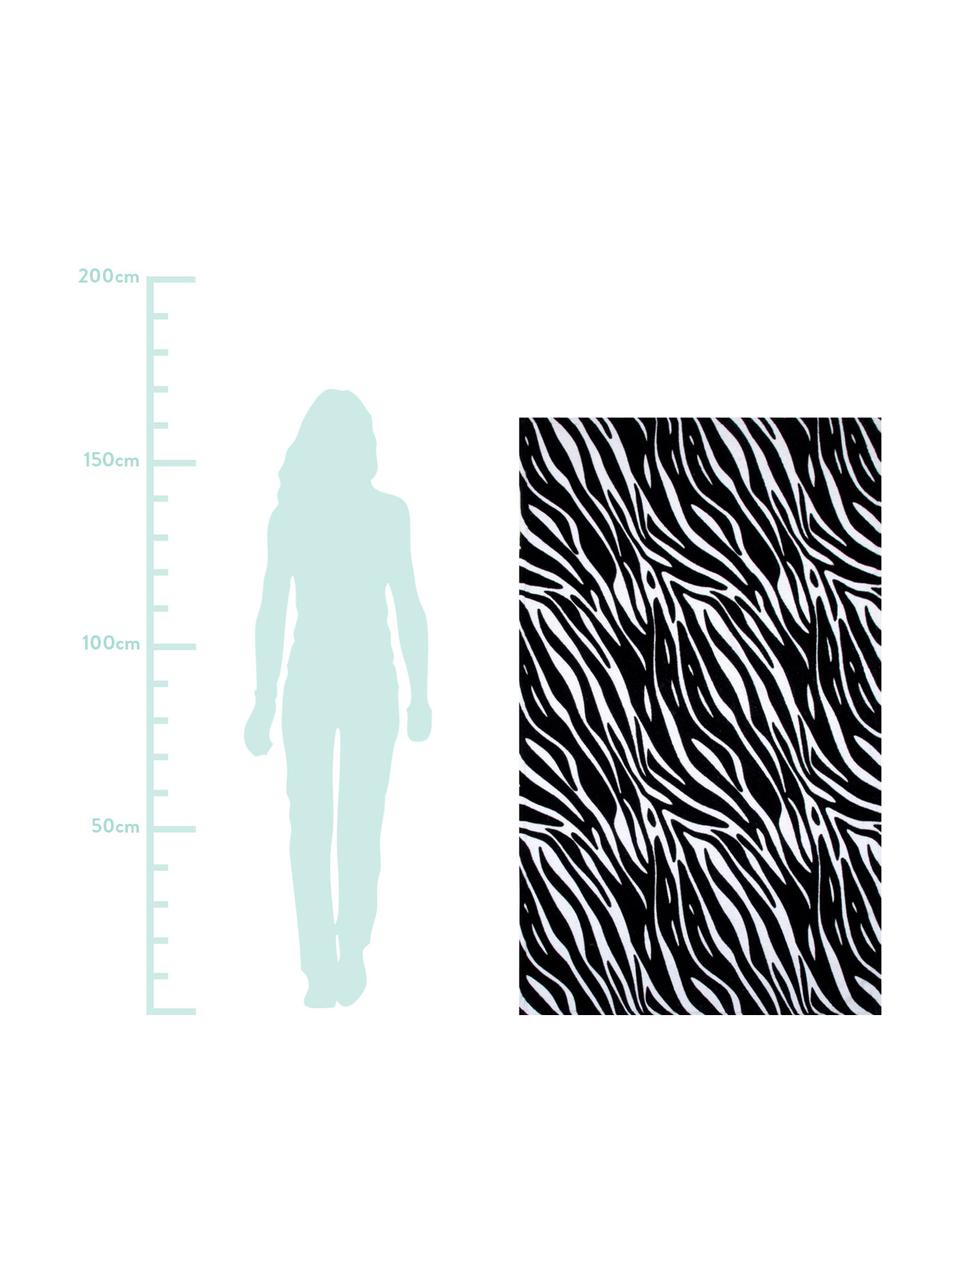 Ręcznik plażowy Zebra, 100% bawełna
Niska gramatura 350 g/m², Czarny, biały, S 90 x D 160 cm